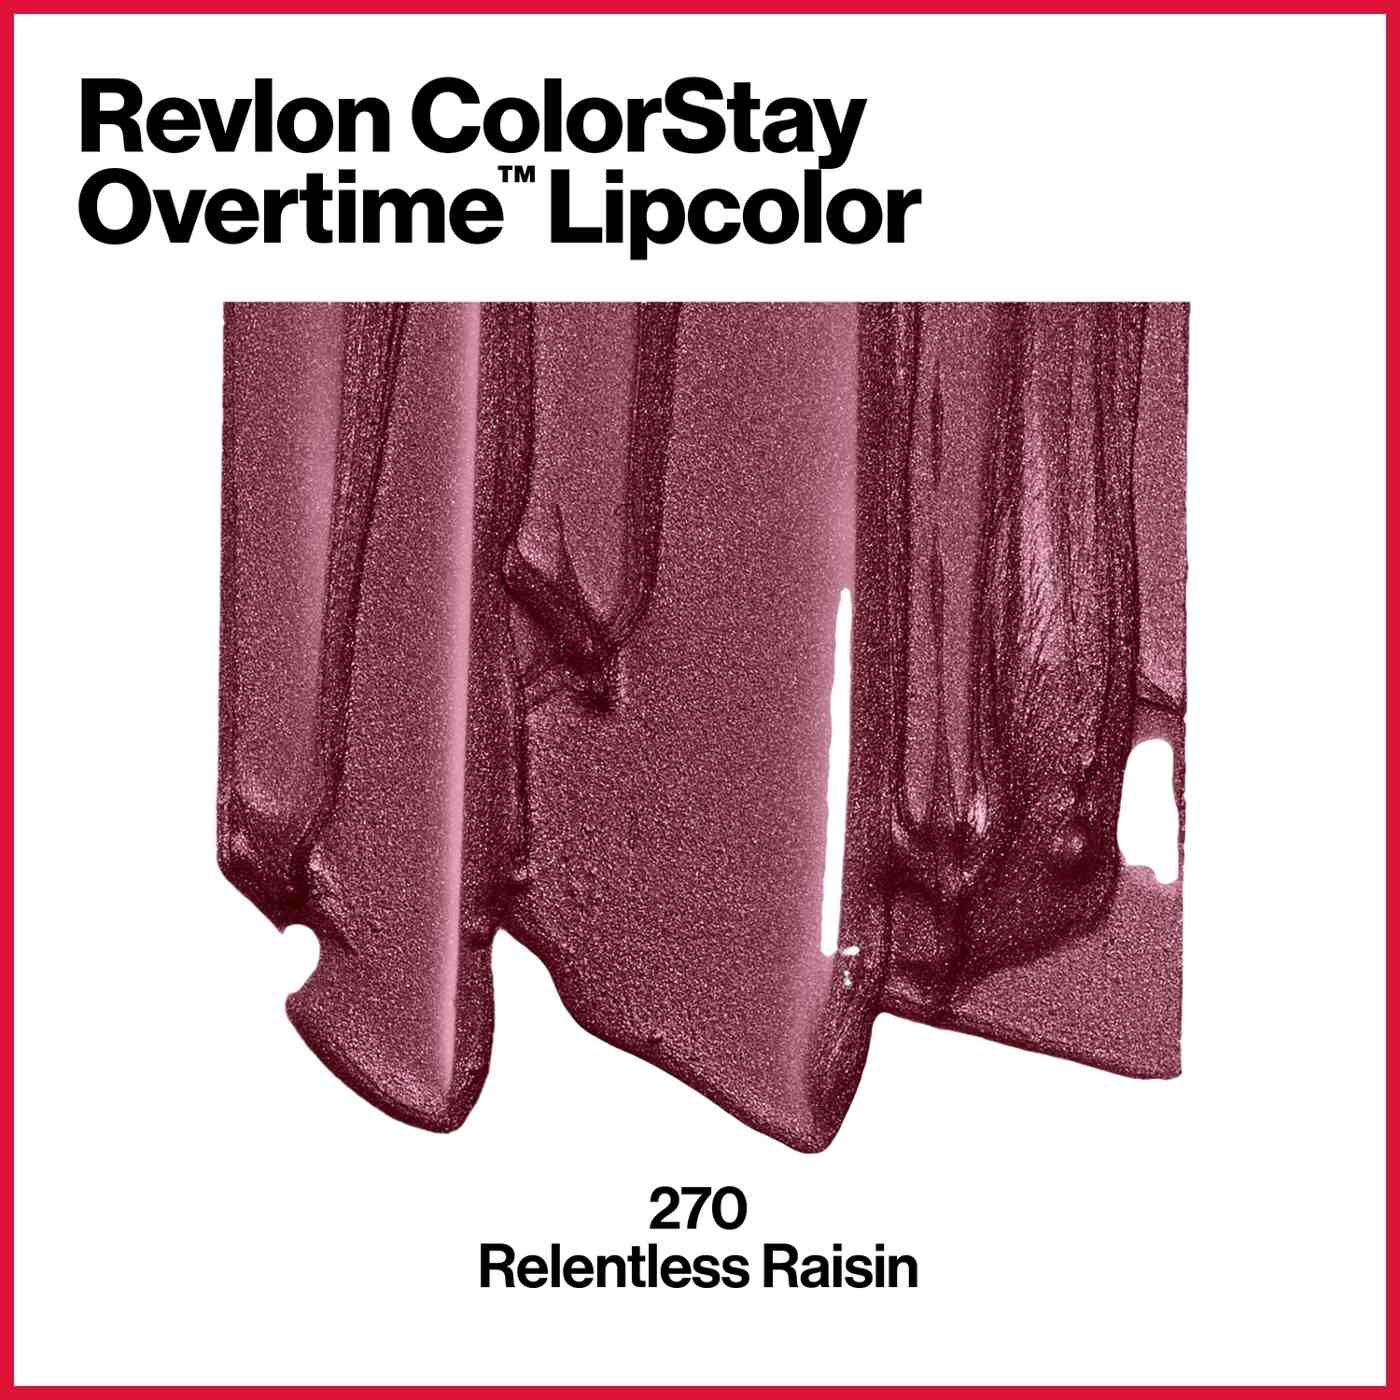 Revlon ColorStay Overtime Lipcolor - 270 Relentless Raisin; image 6 of 8